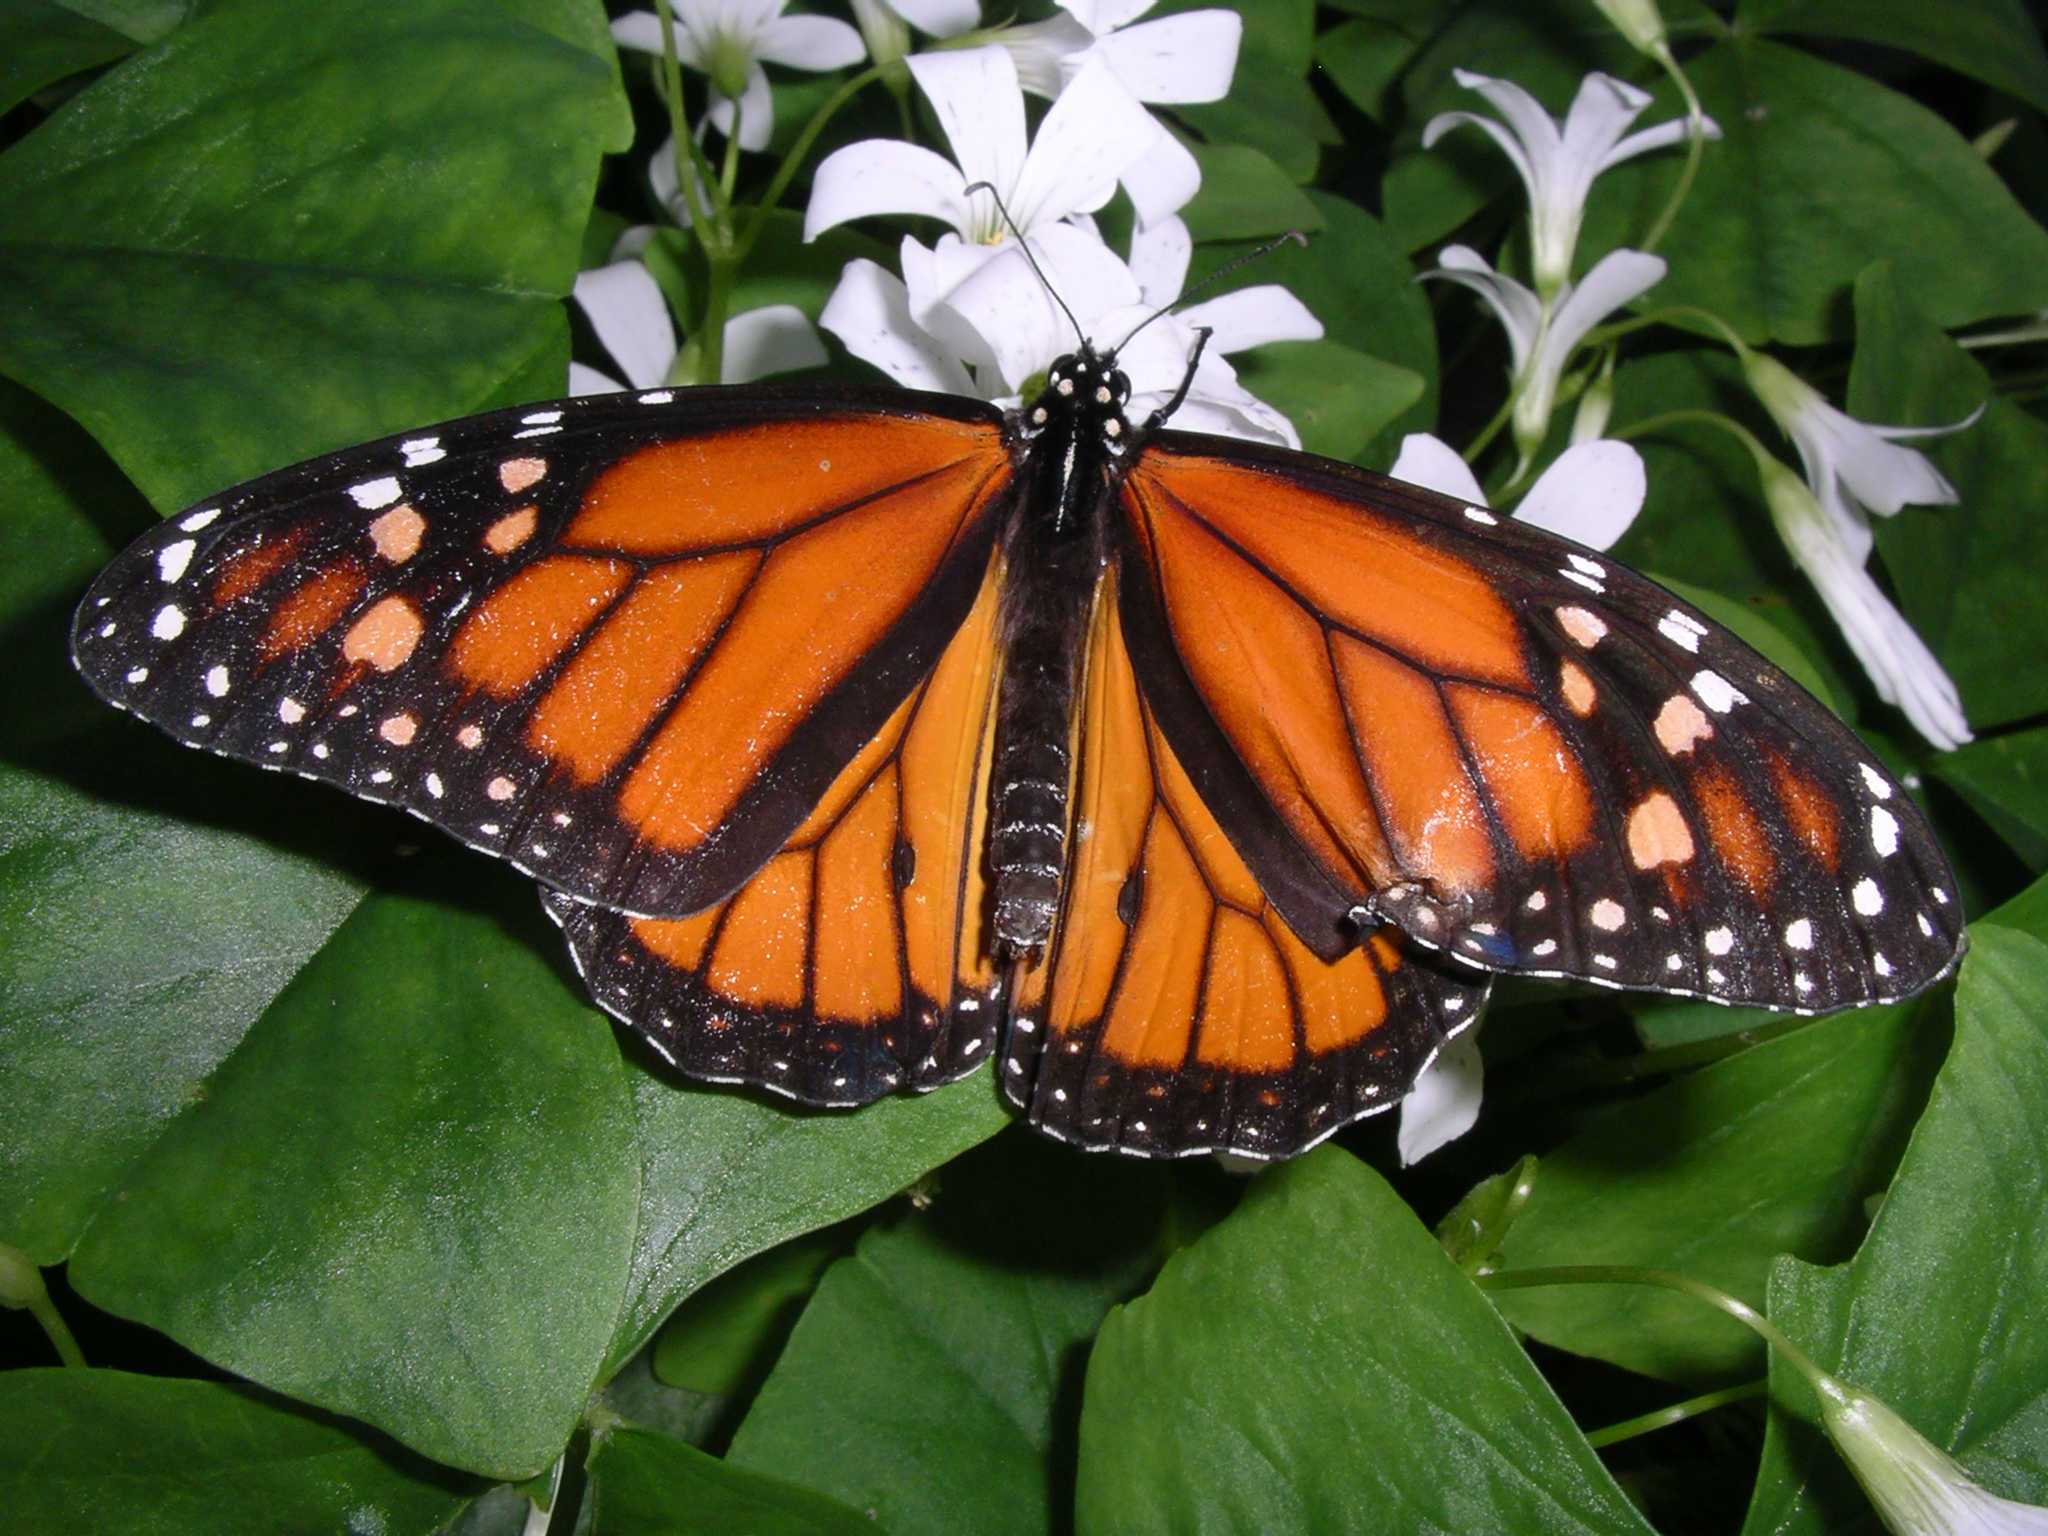 Бабочки - описание, особенности строения, виды, размеры, питание